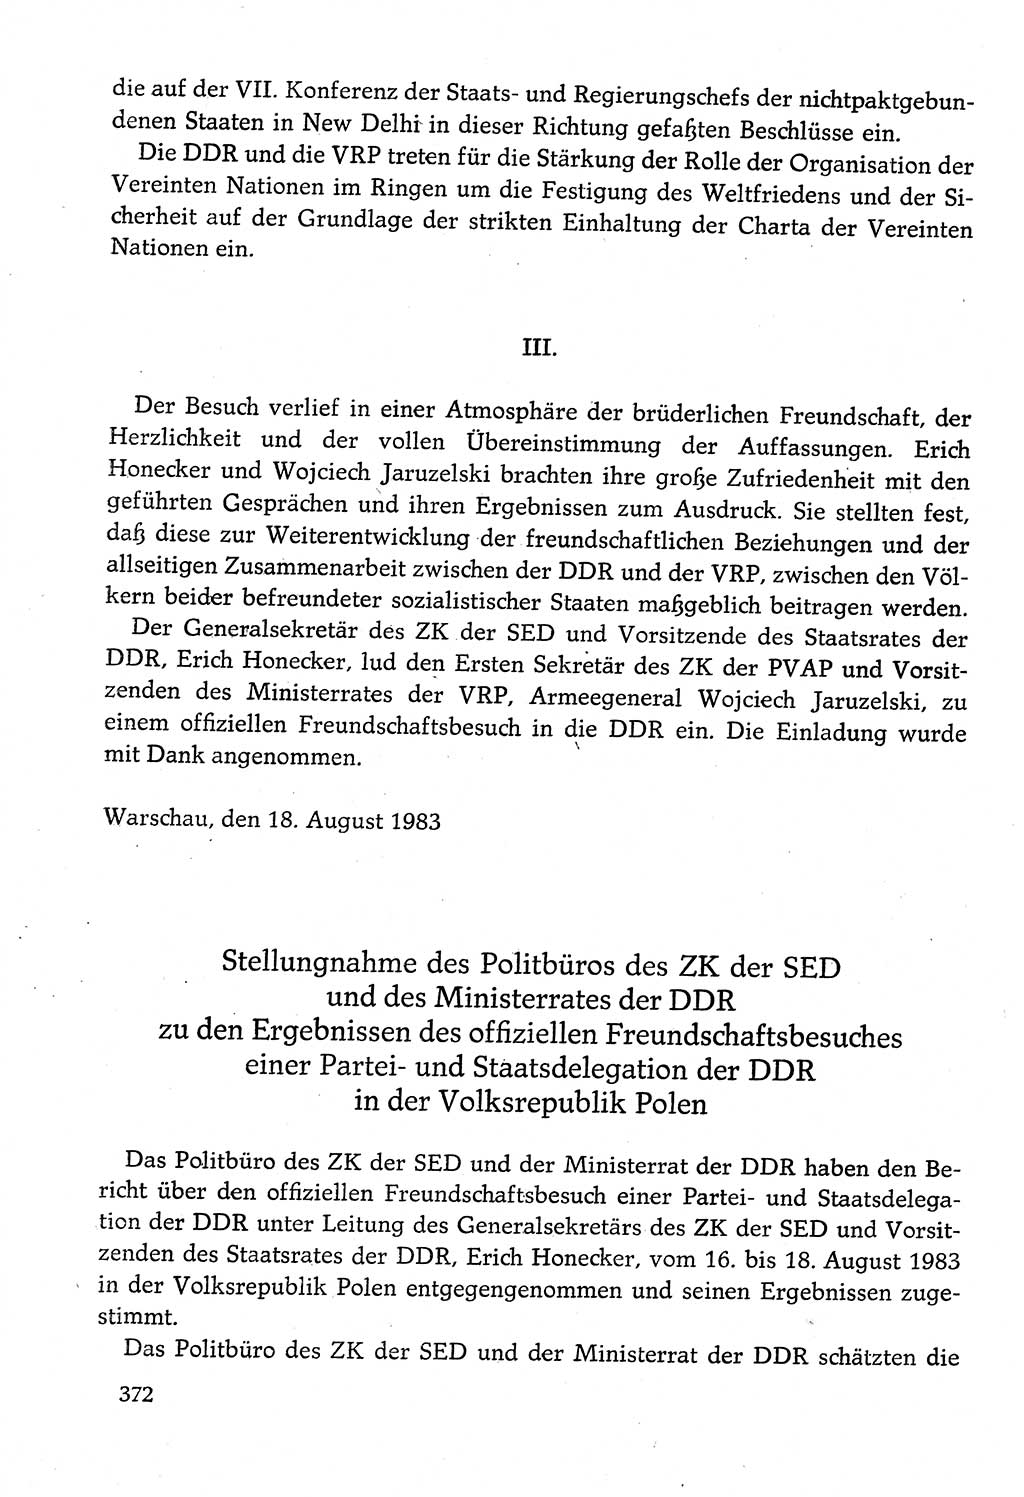 Dokumente der Sozialistischen Einheitspartei Deutschlands (SED) [Deutsche Demokratische Republik (DDR)] 1982-1983, Seite 372 (Dok. SED DDR 1982-1983, S. 372)